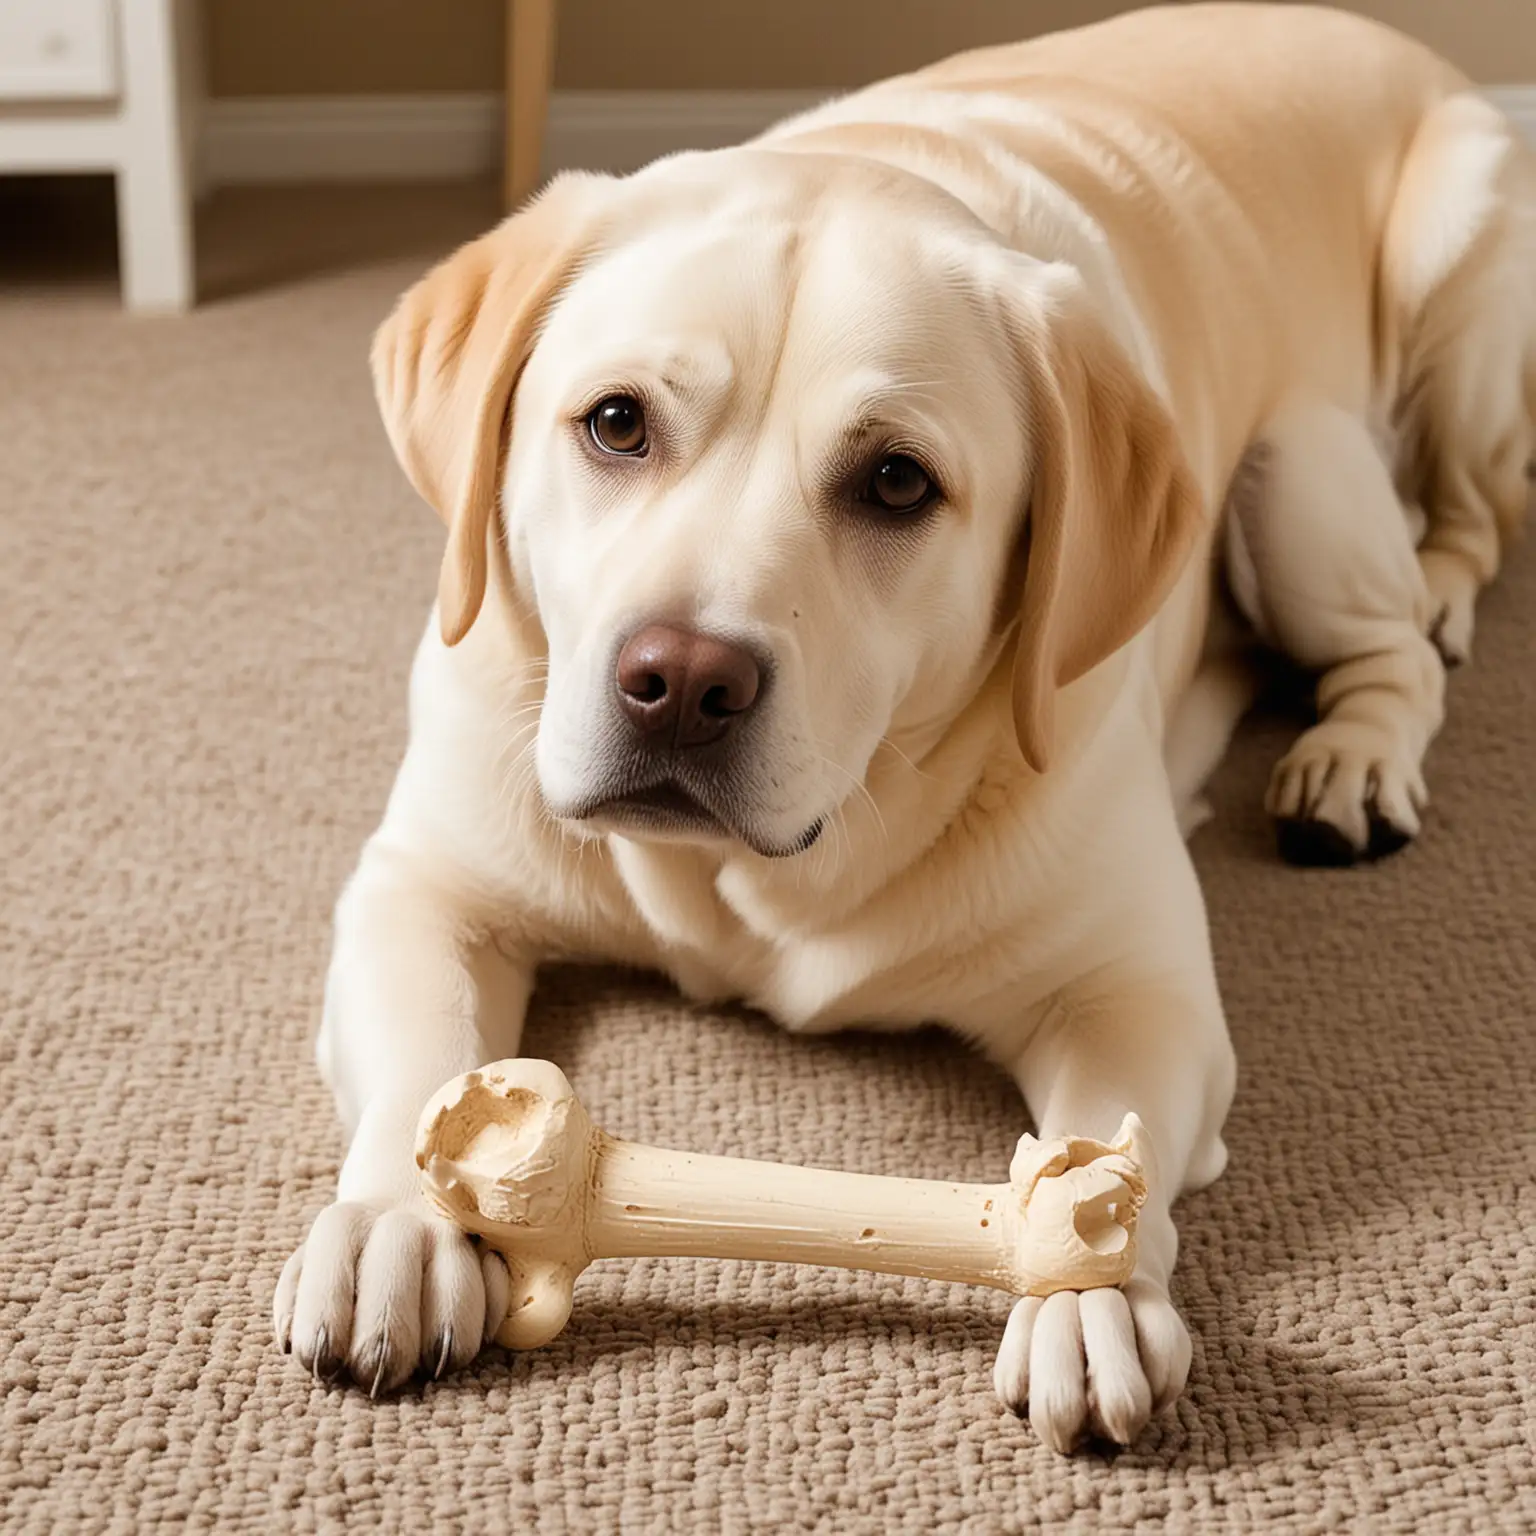 A Labrador Retriever with a toy bone.